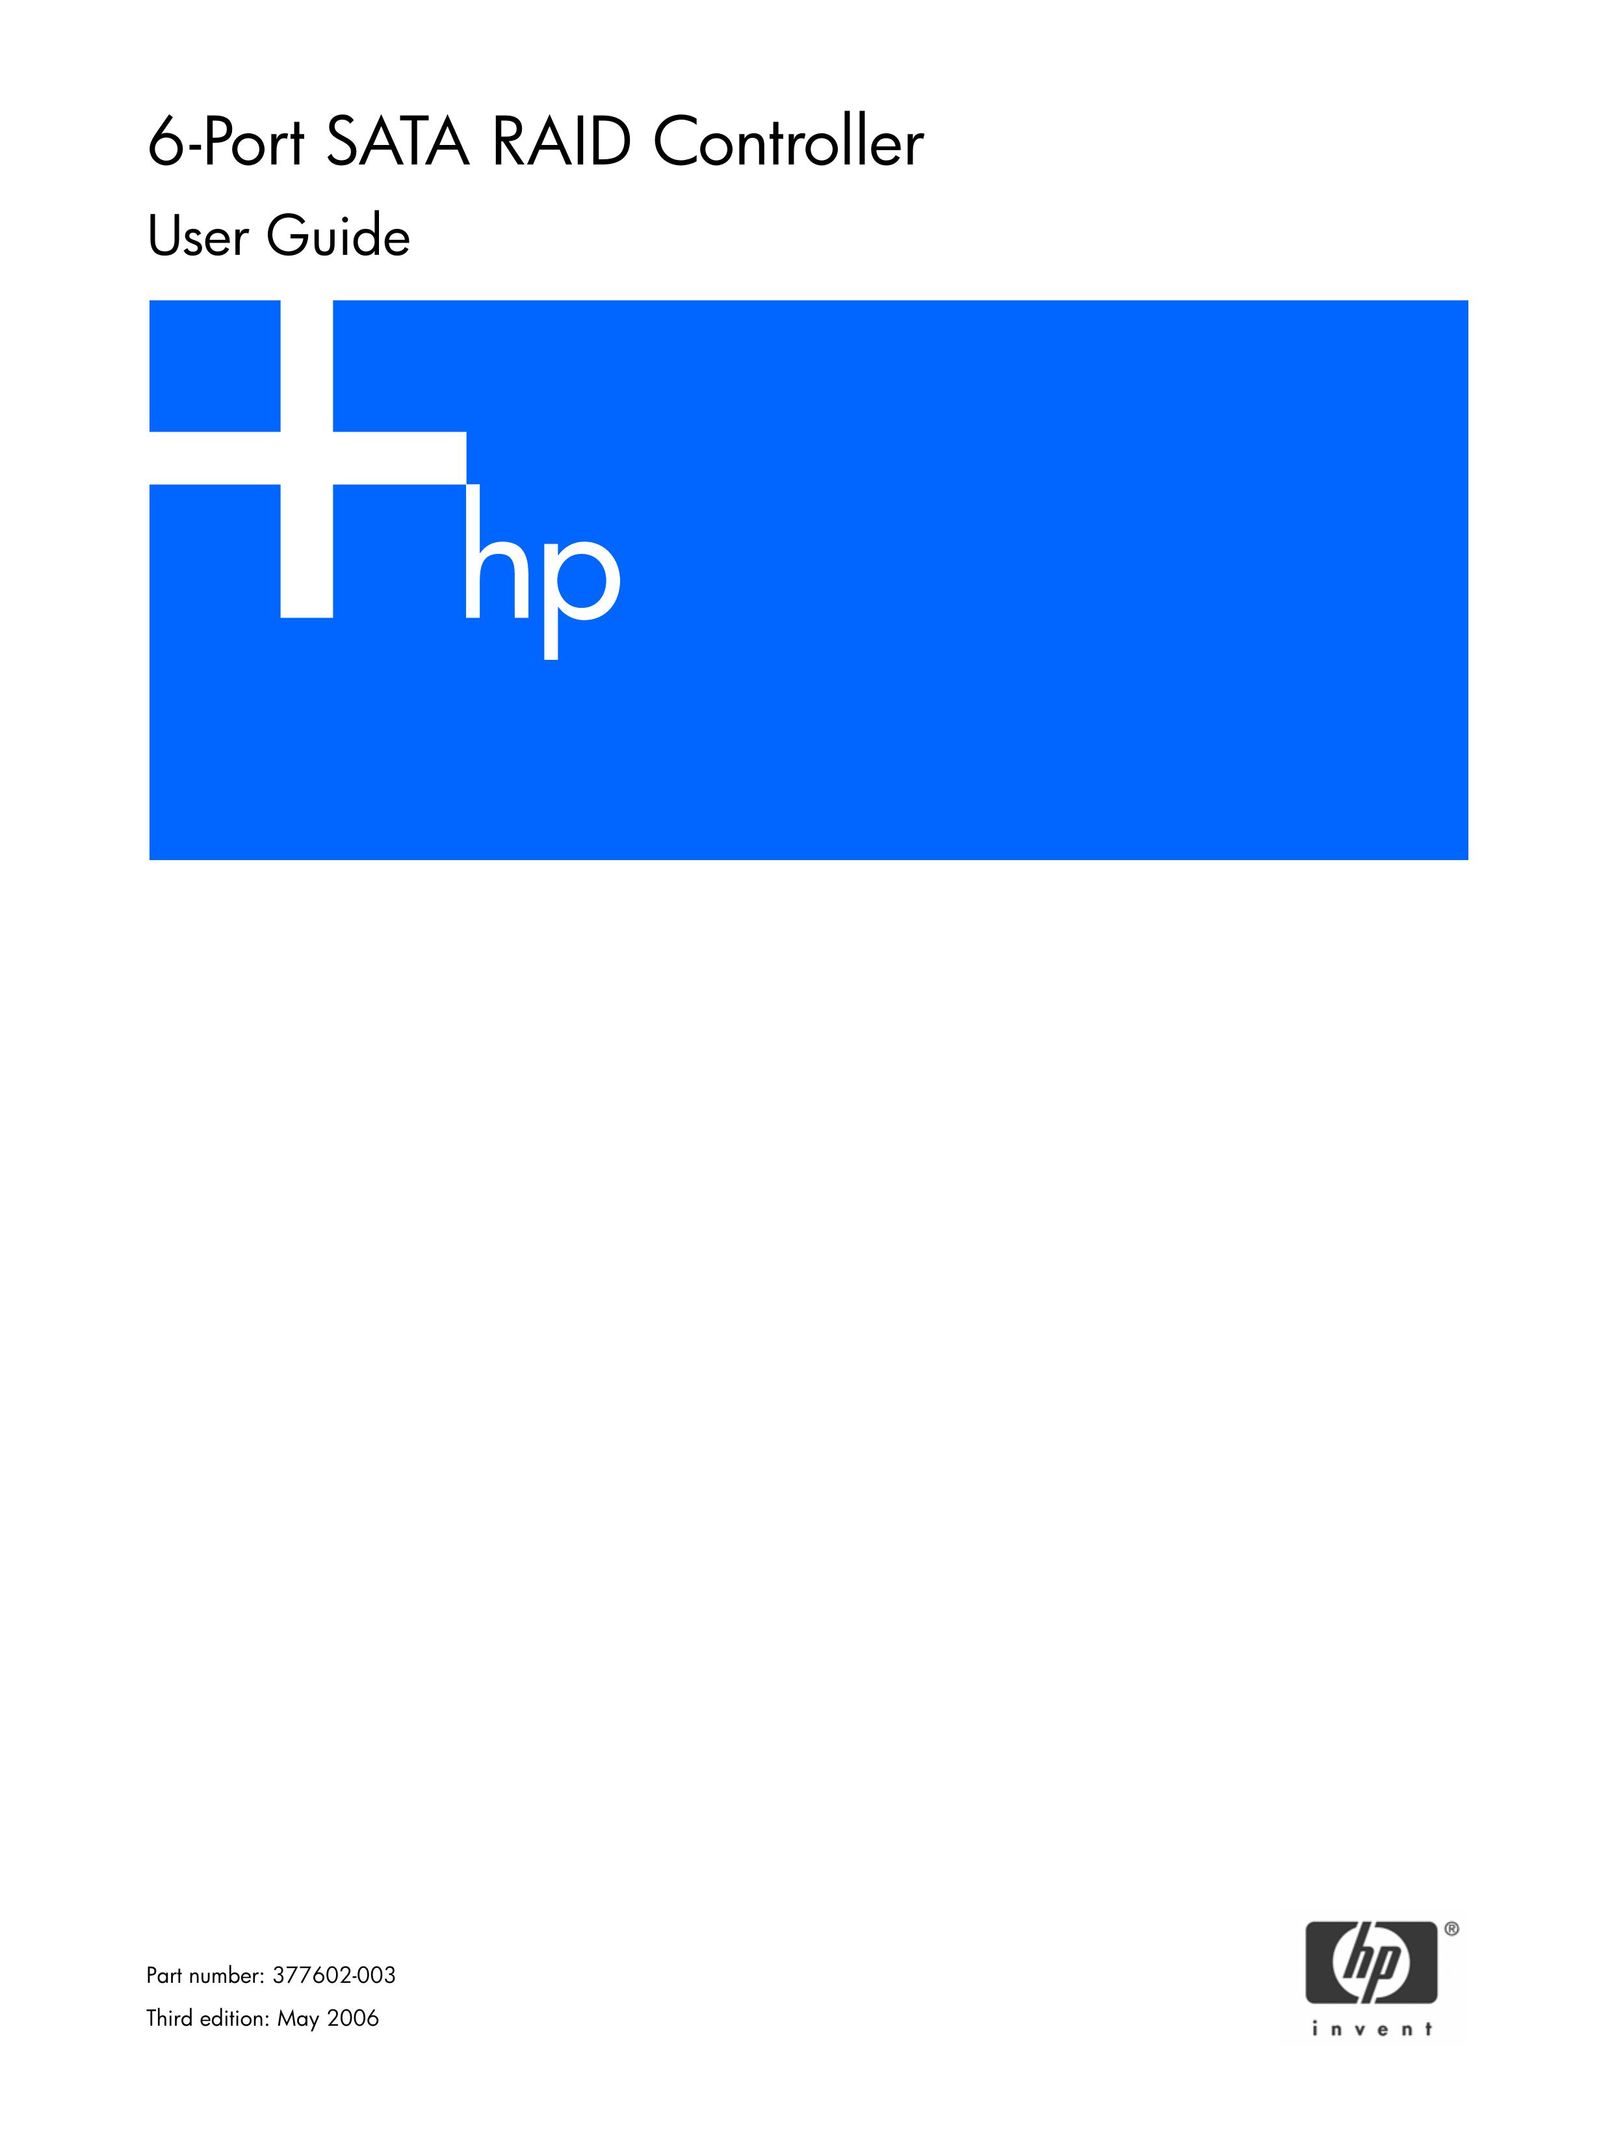 HP (Hewlett-Packard) 6-Port SATA RAID Network Card User Manual